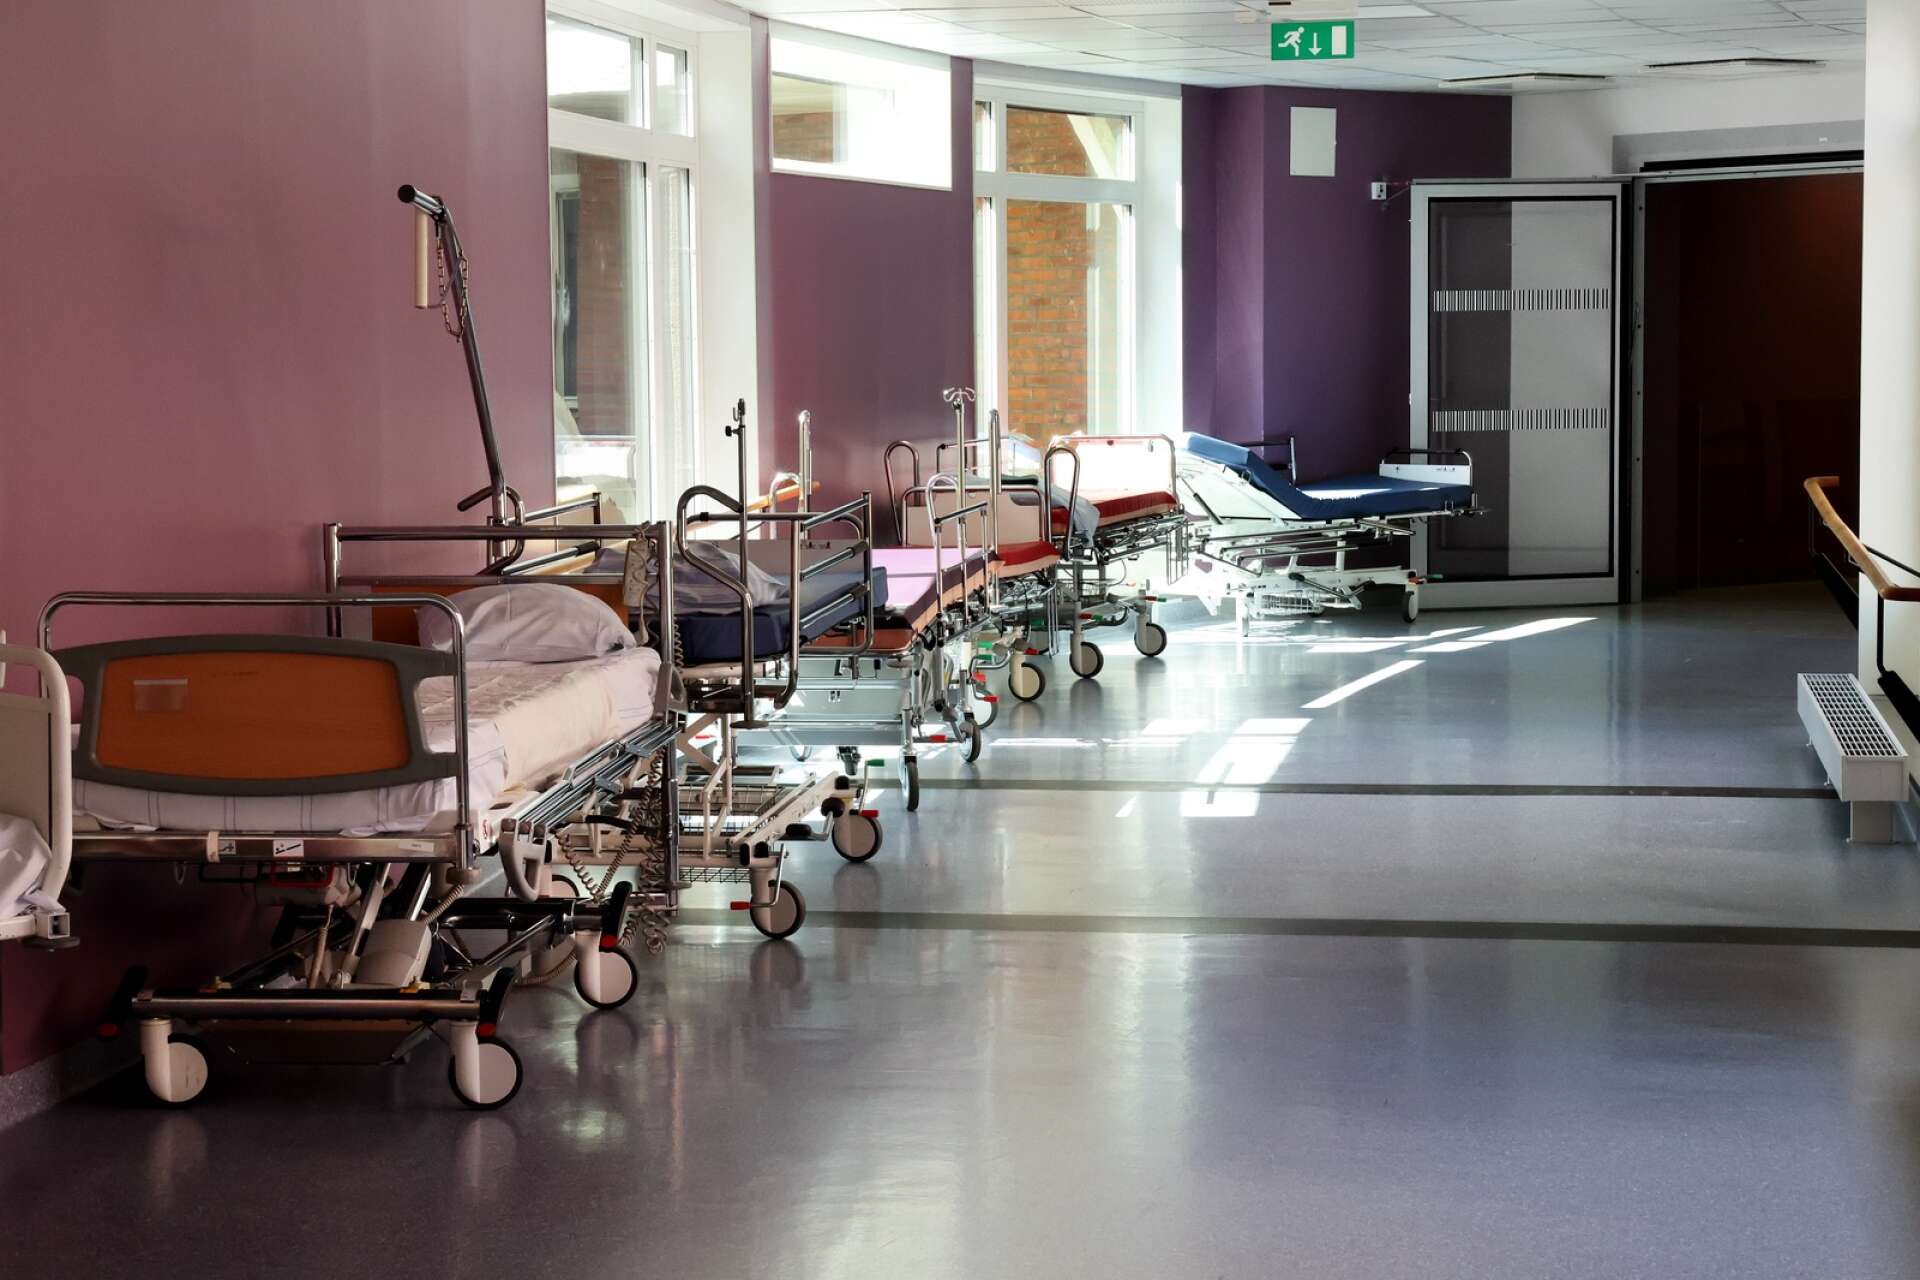 Under två sommarveckor var det så överbelagt på medicinavdelningen i Lidköping att patienter fick ligga i både korridorer och väntrum.